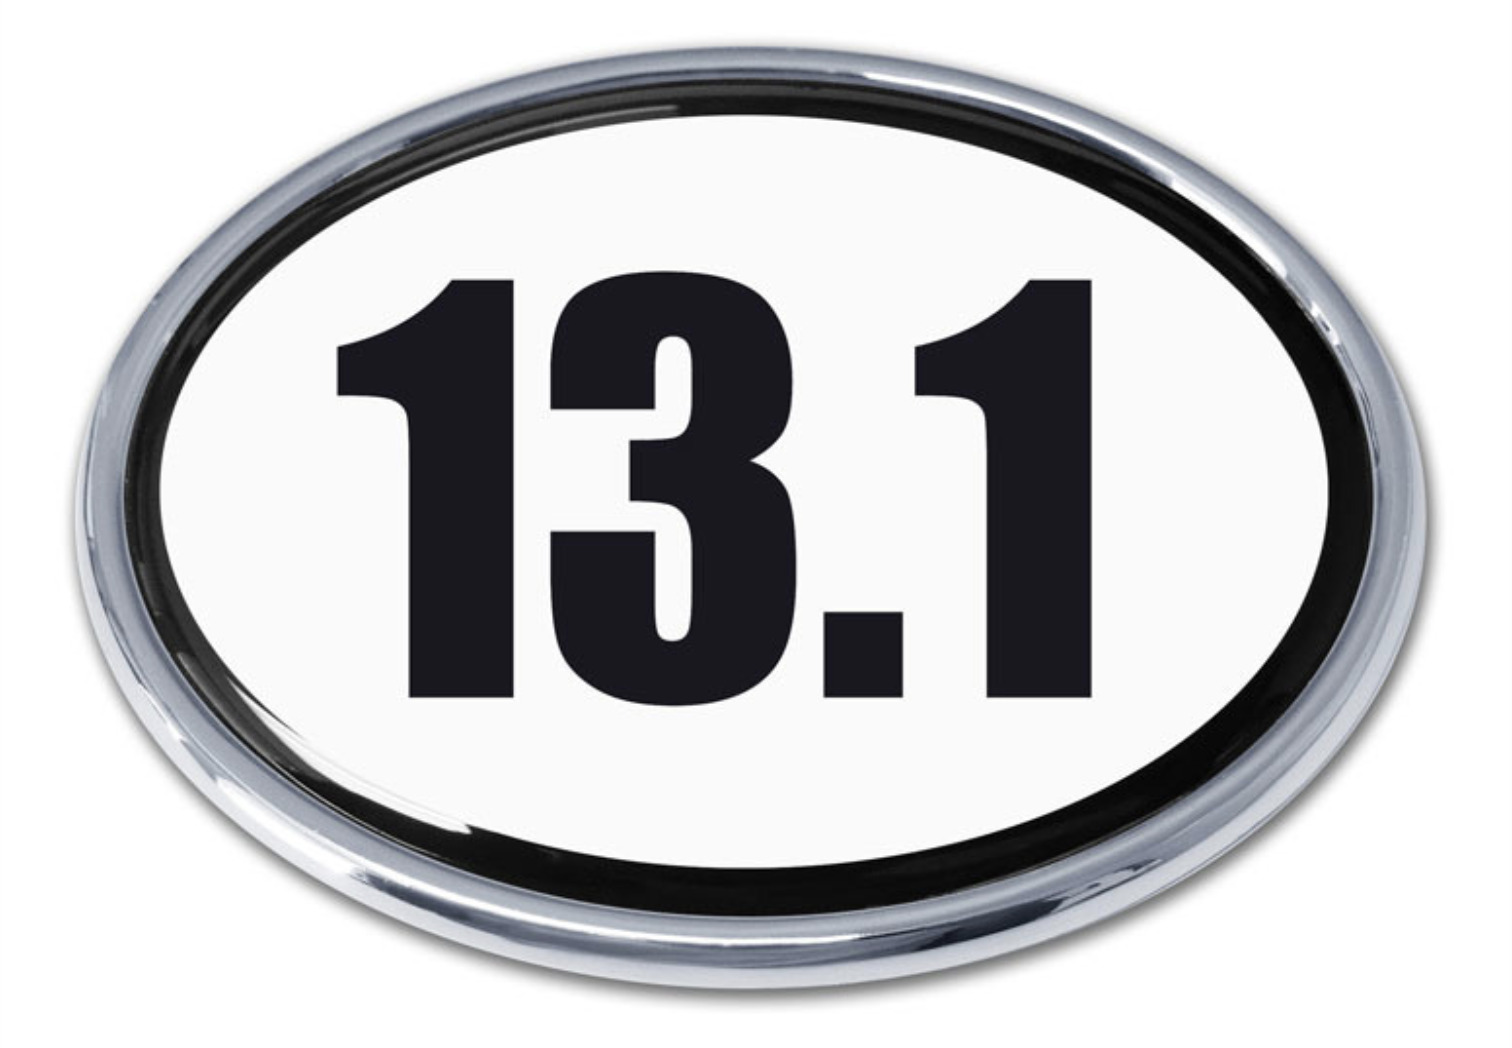 13.1 half marathon white chrome auto emblem decal usa made